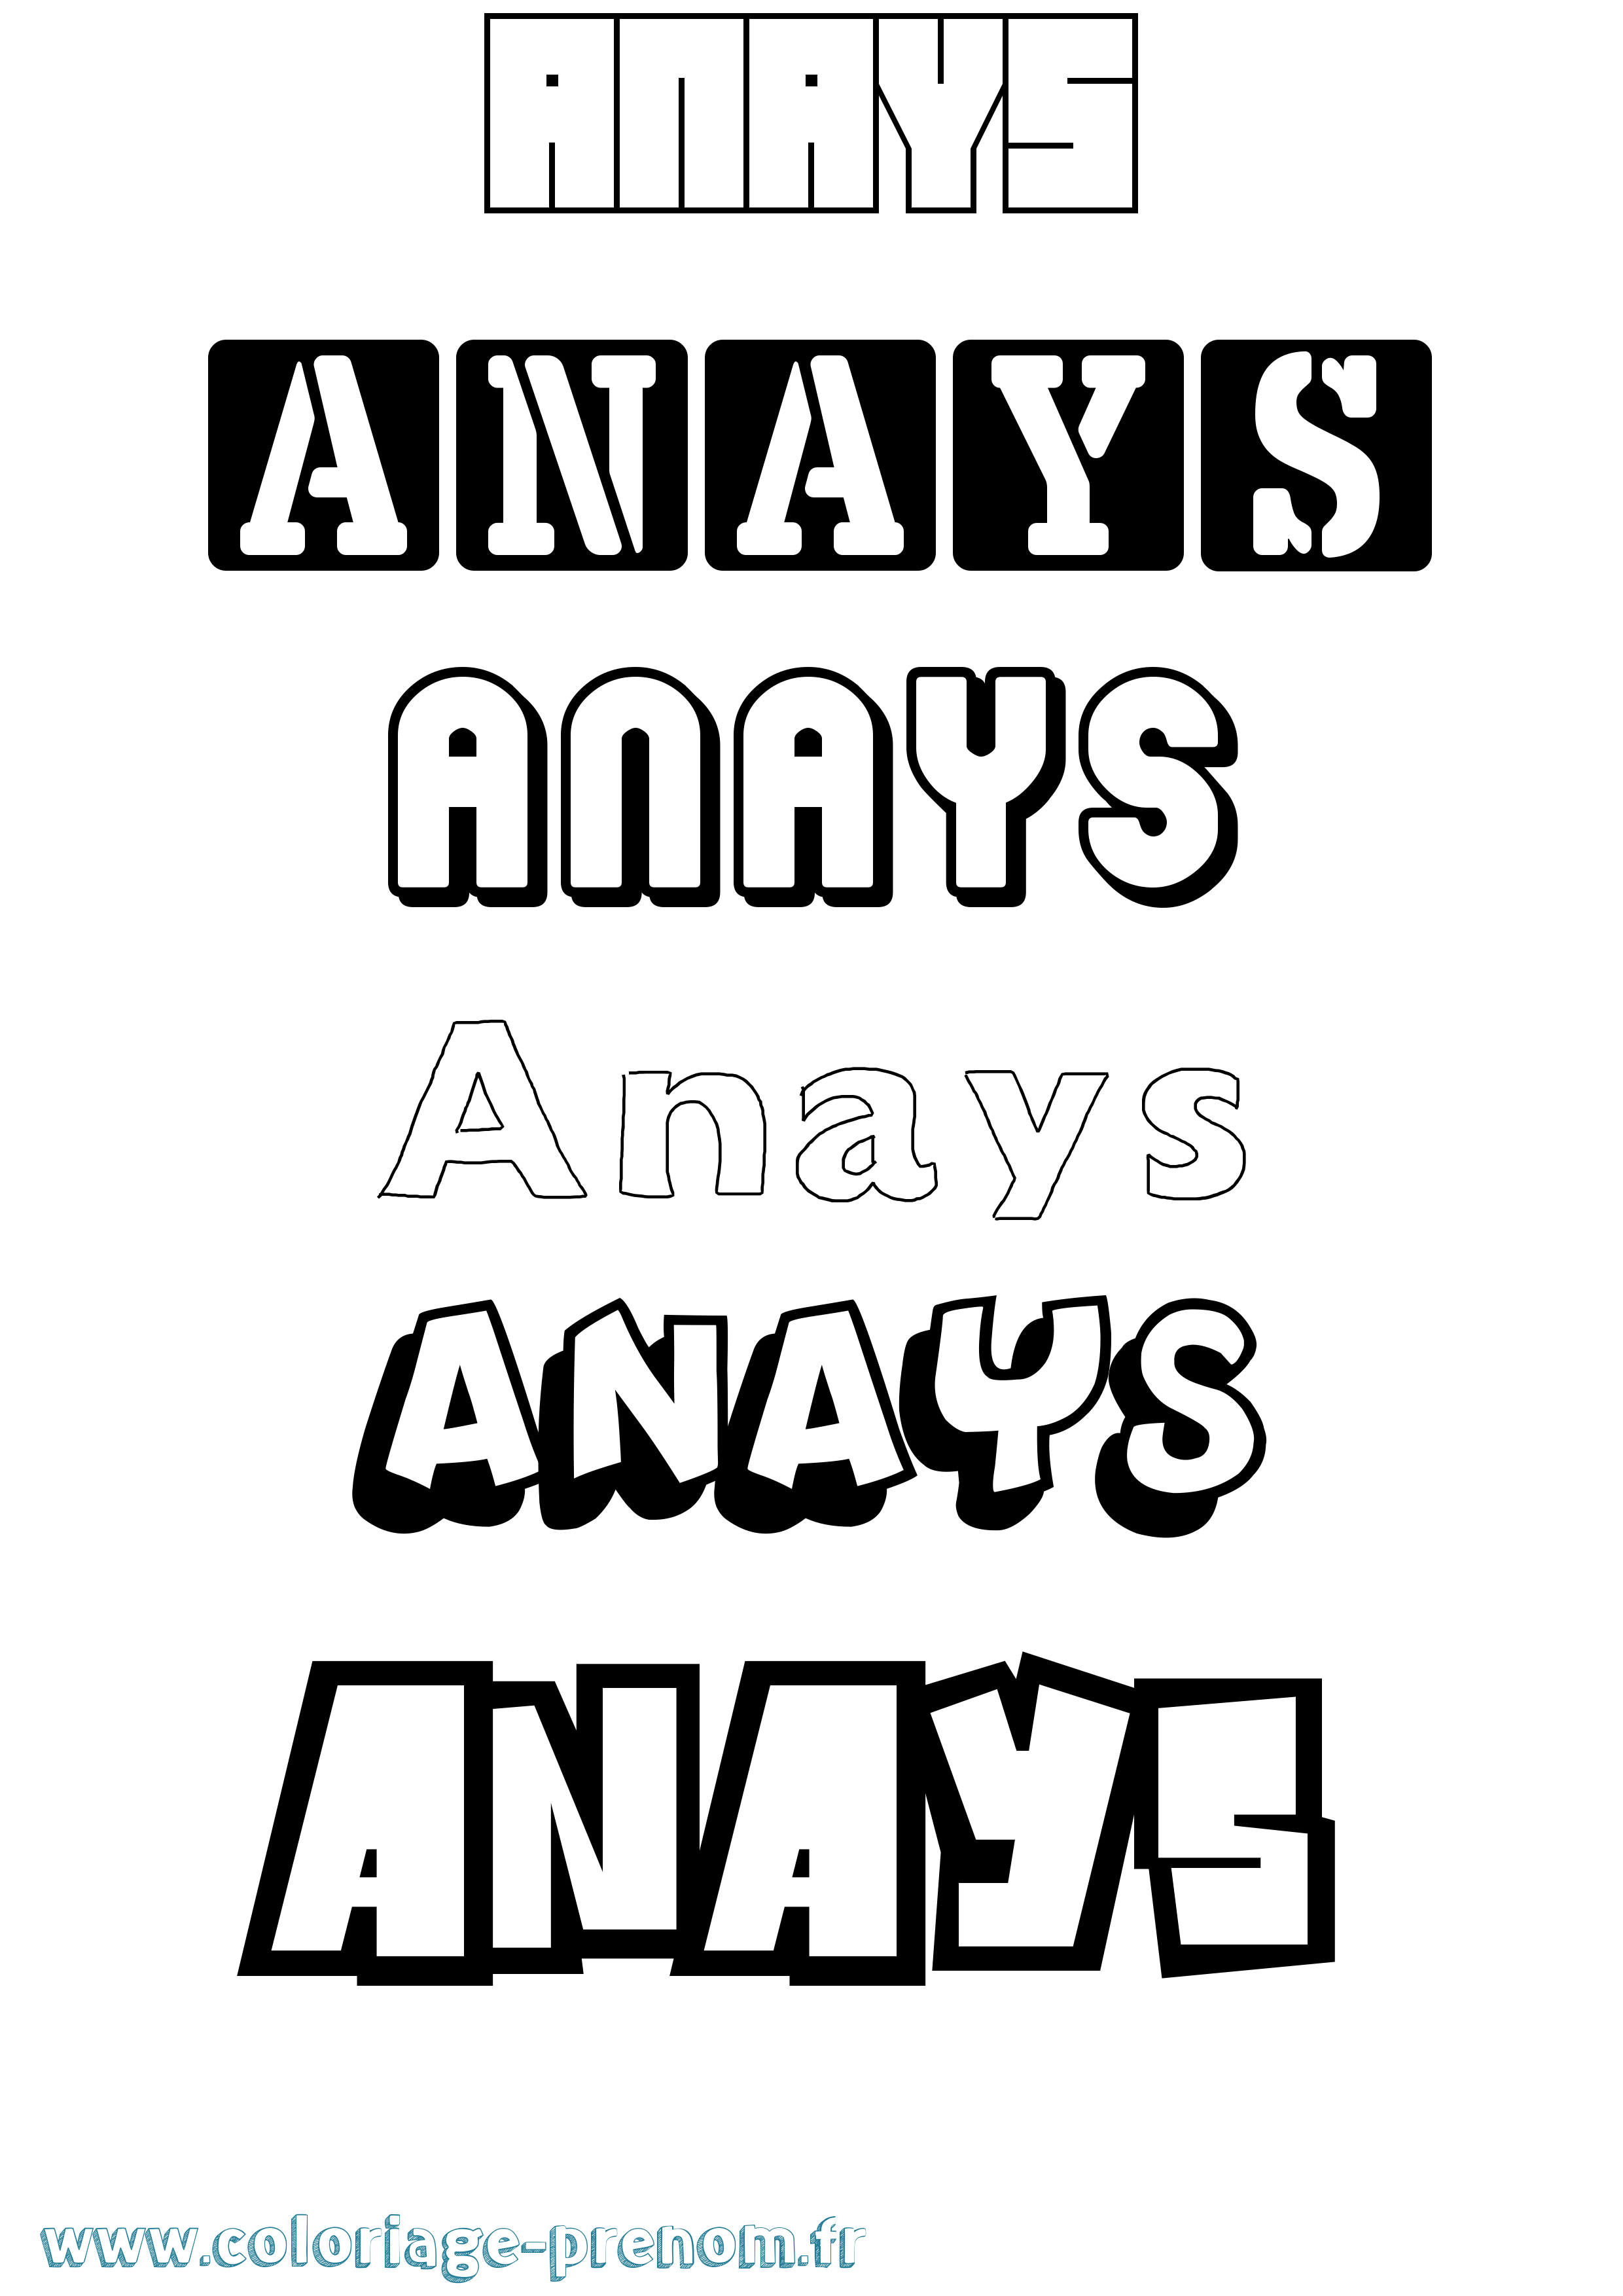 Coloriage prénom Anays Simple